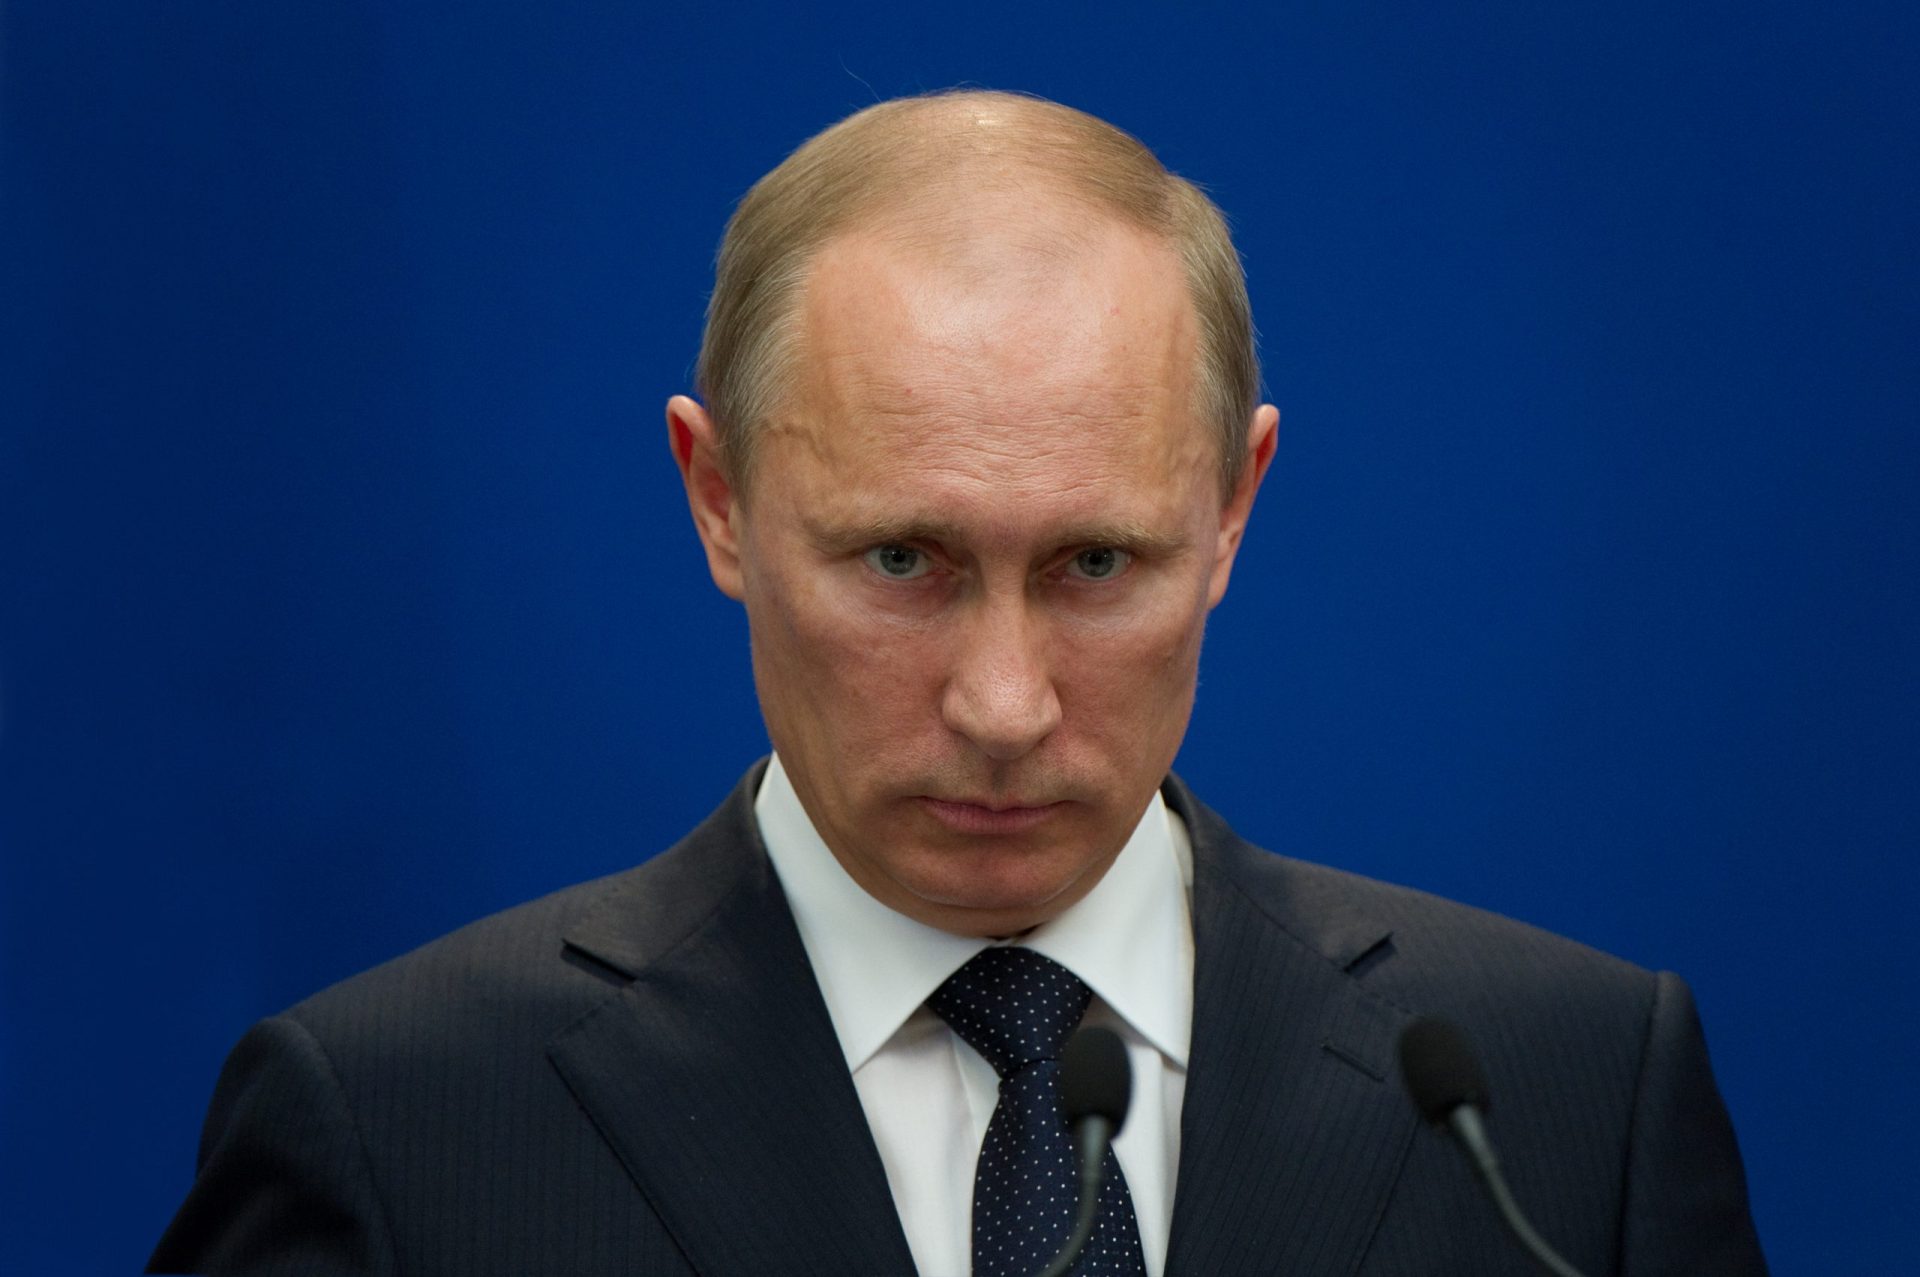 Vladimir Putin tem síndrome de Asperger, afirma estudo do Pentágono